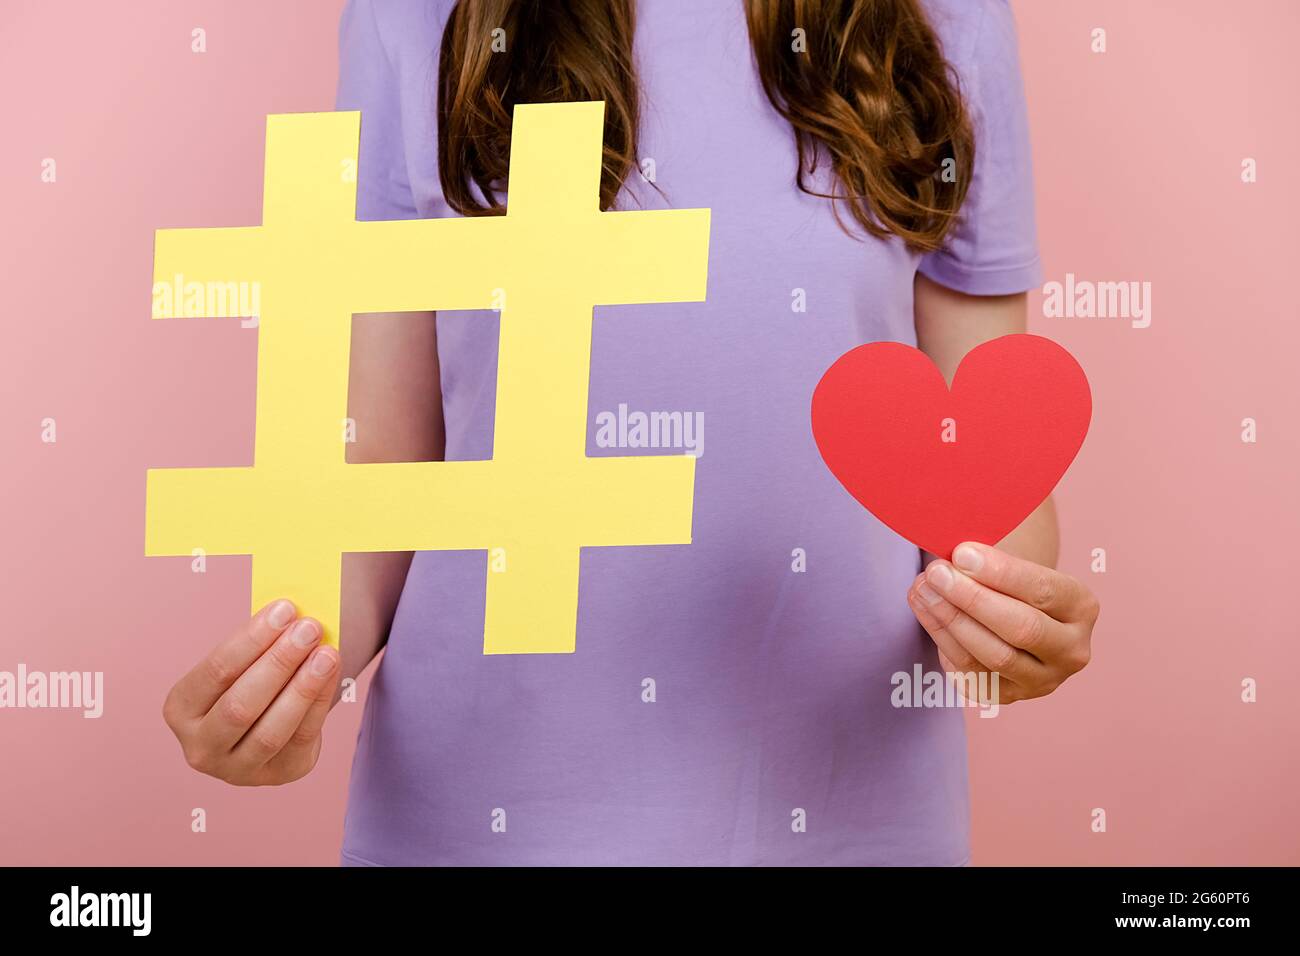 Gros plan court des images de la jeune femme porte un t-shirt montre un grand signe de hashtag jaune et un petit coeur rouge, posant isolé sur le mur rose Banque D'Images